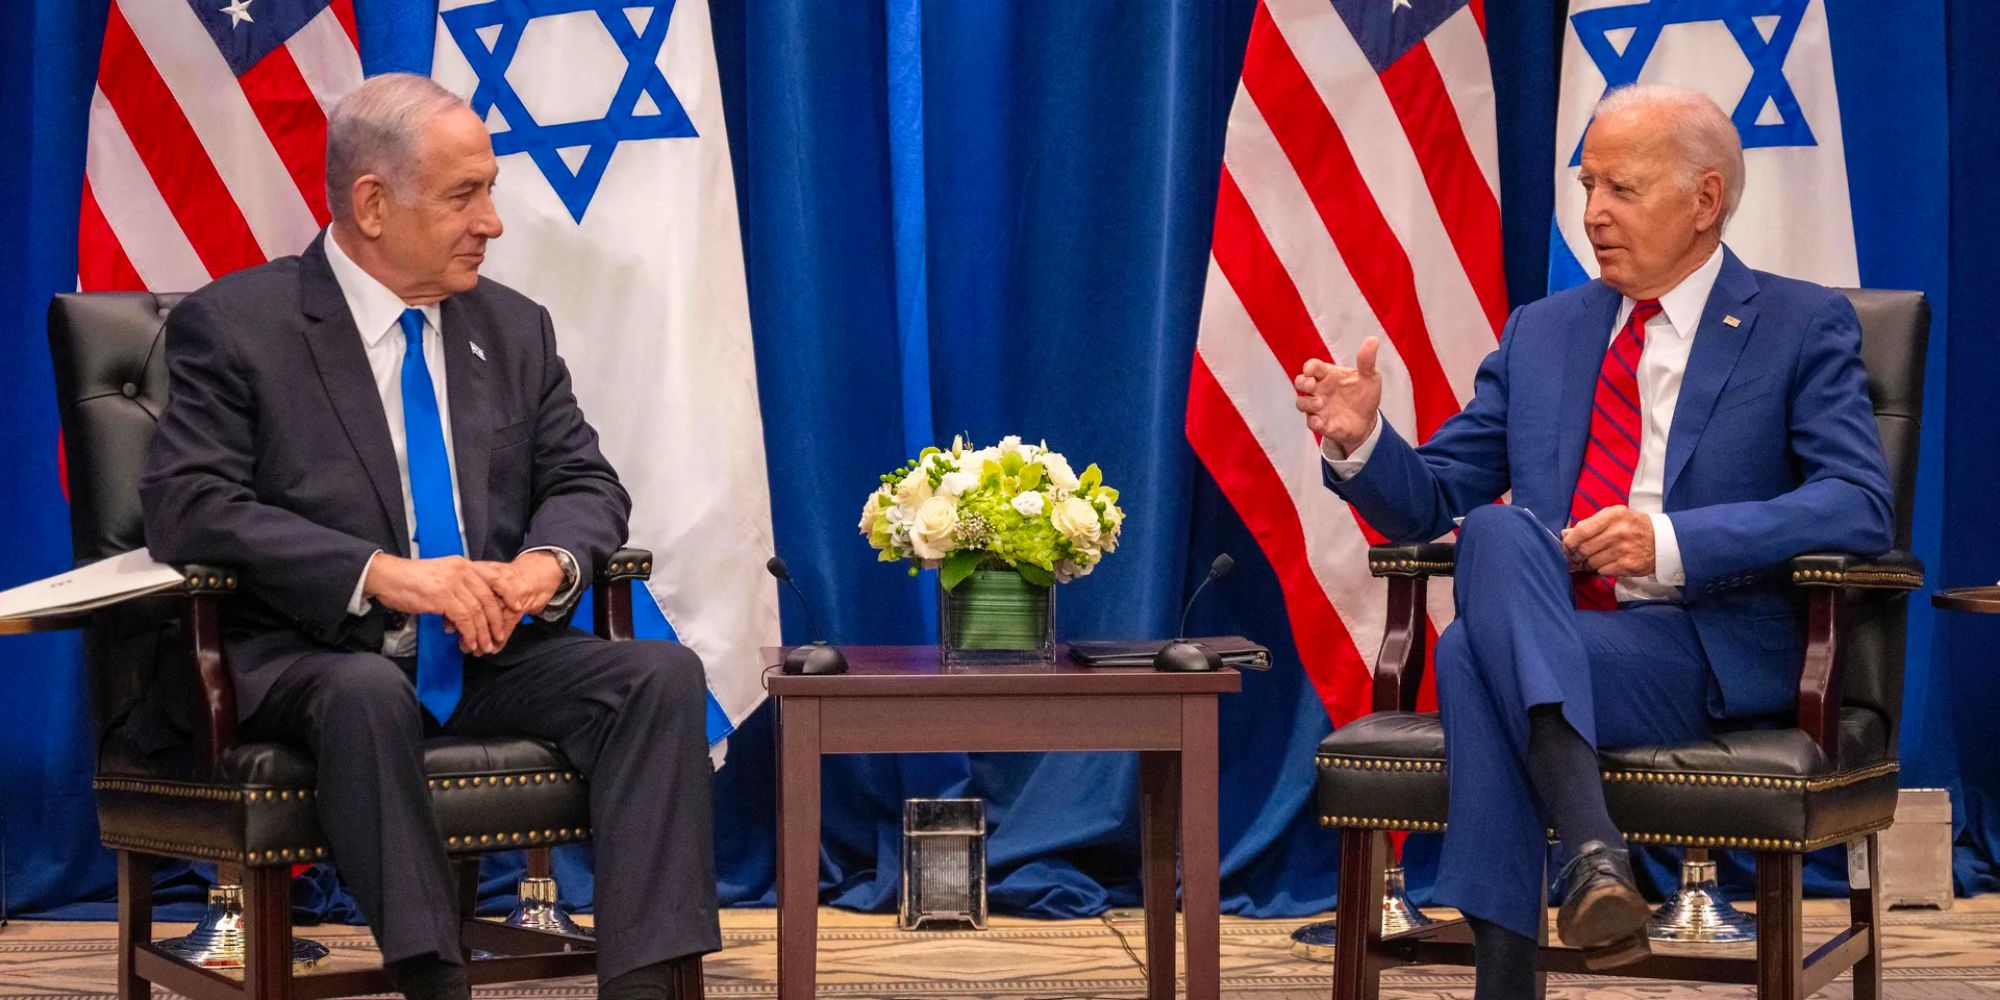 Prime Minister Netanyahu and President Biden